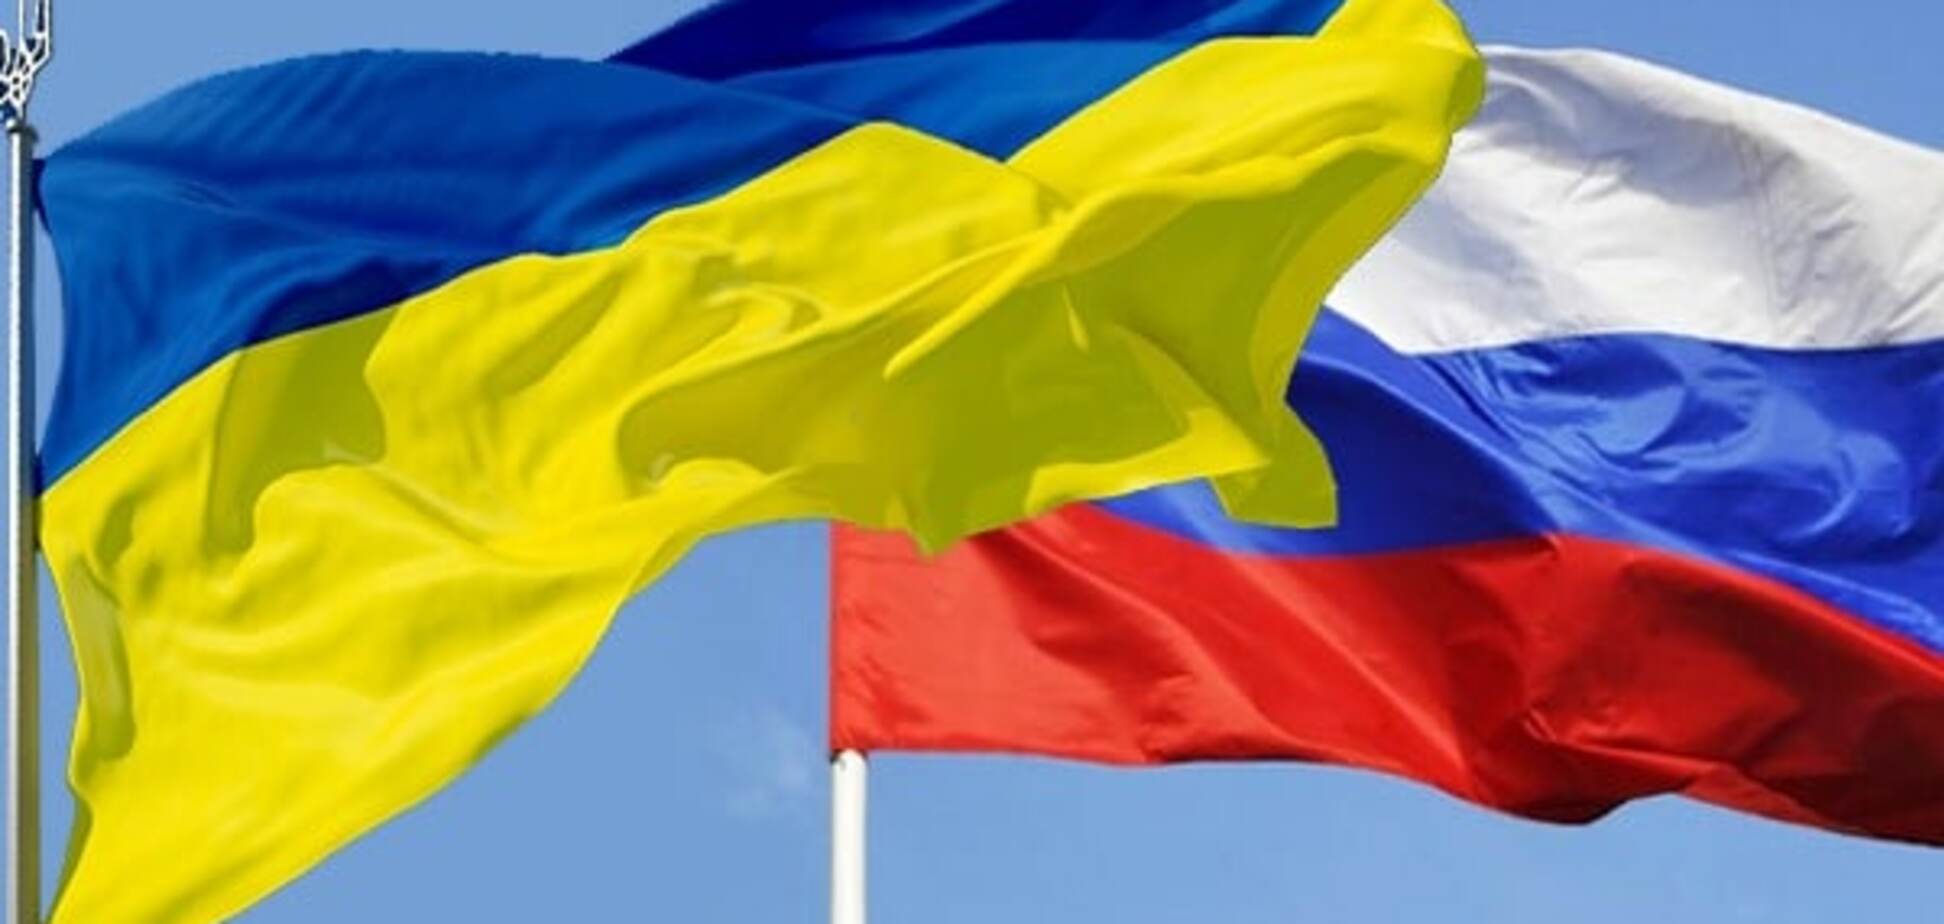 Украина не будет разрывать дипотношения с Россией из-за выборов в Госдуму - МИД